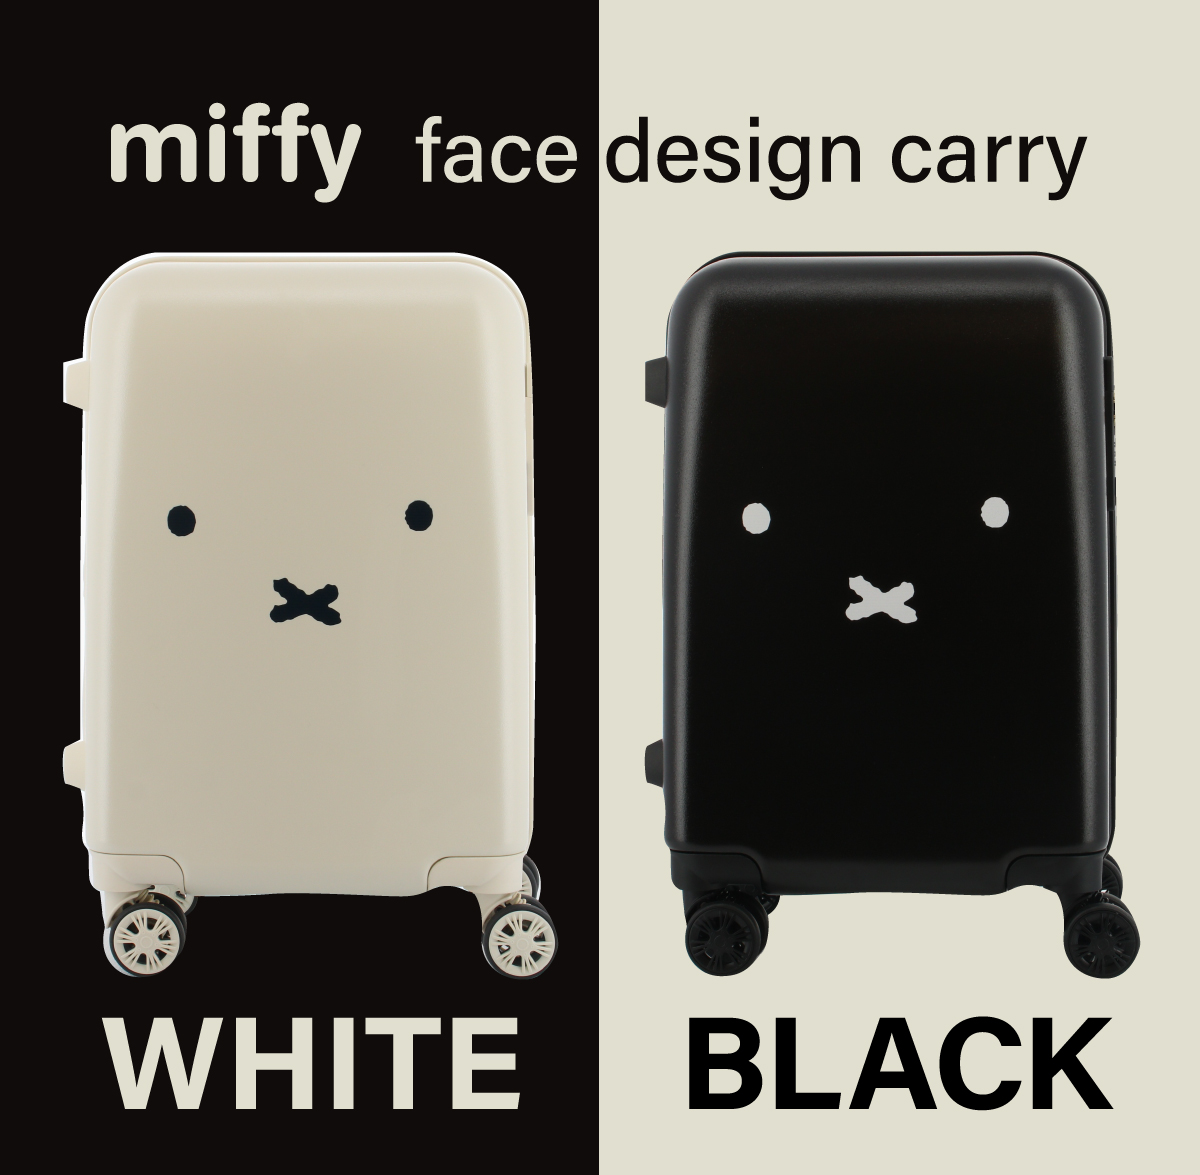 miffyミッフィーのお顔がキュートなフェイスデザインキャリーバッグ新 ...